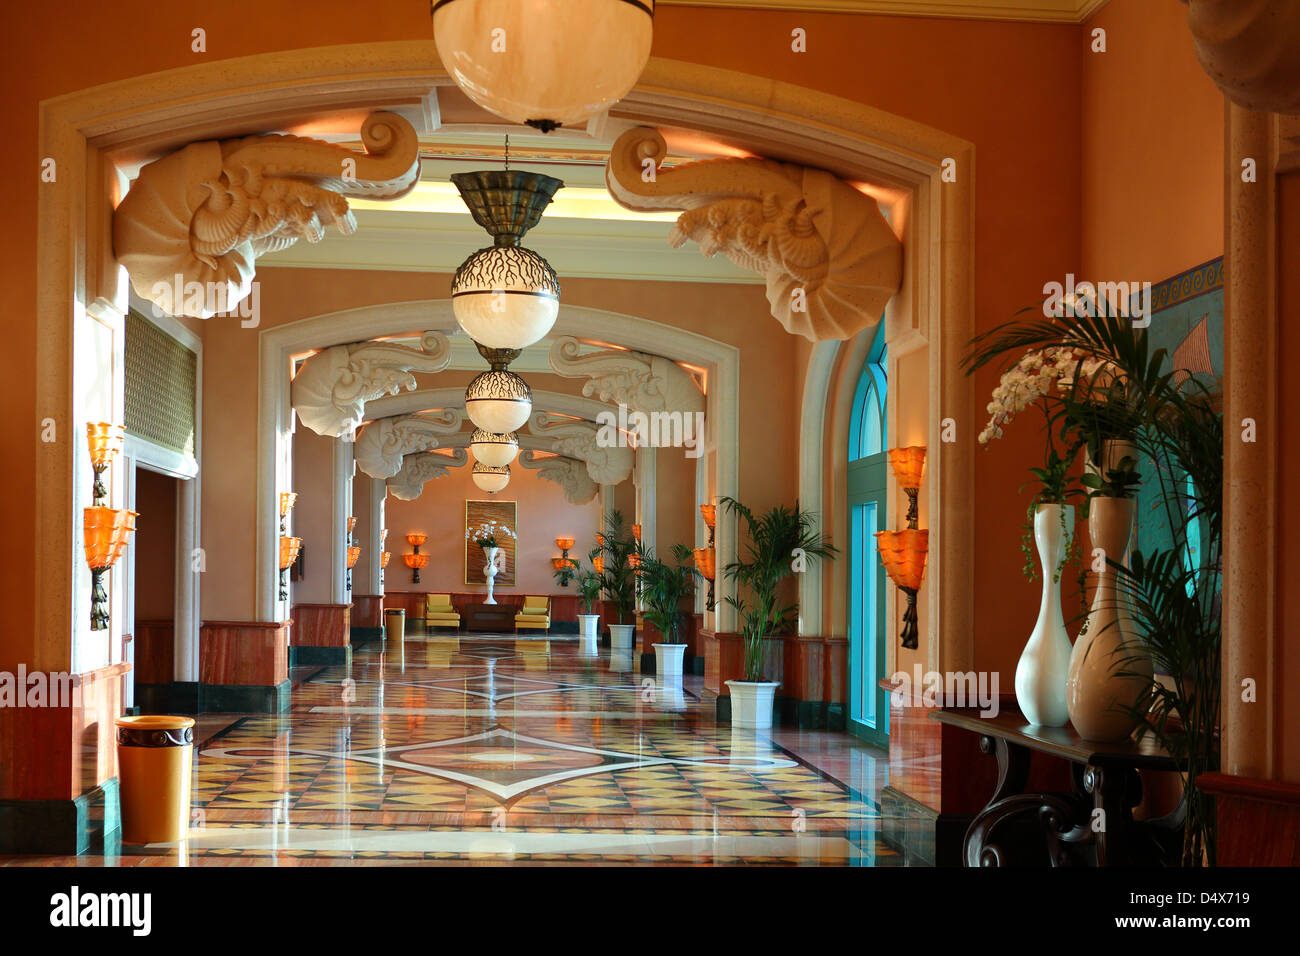 Intérieur de l'hôtel Atlantis à Dubaï, Émirats Arabes Unis Banque D'Images